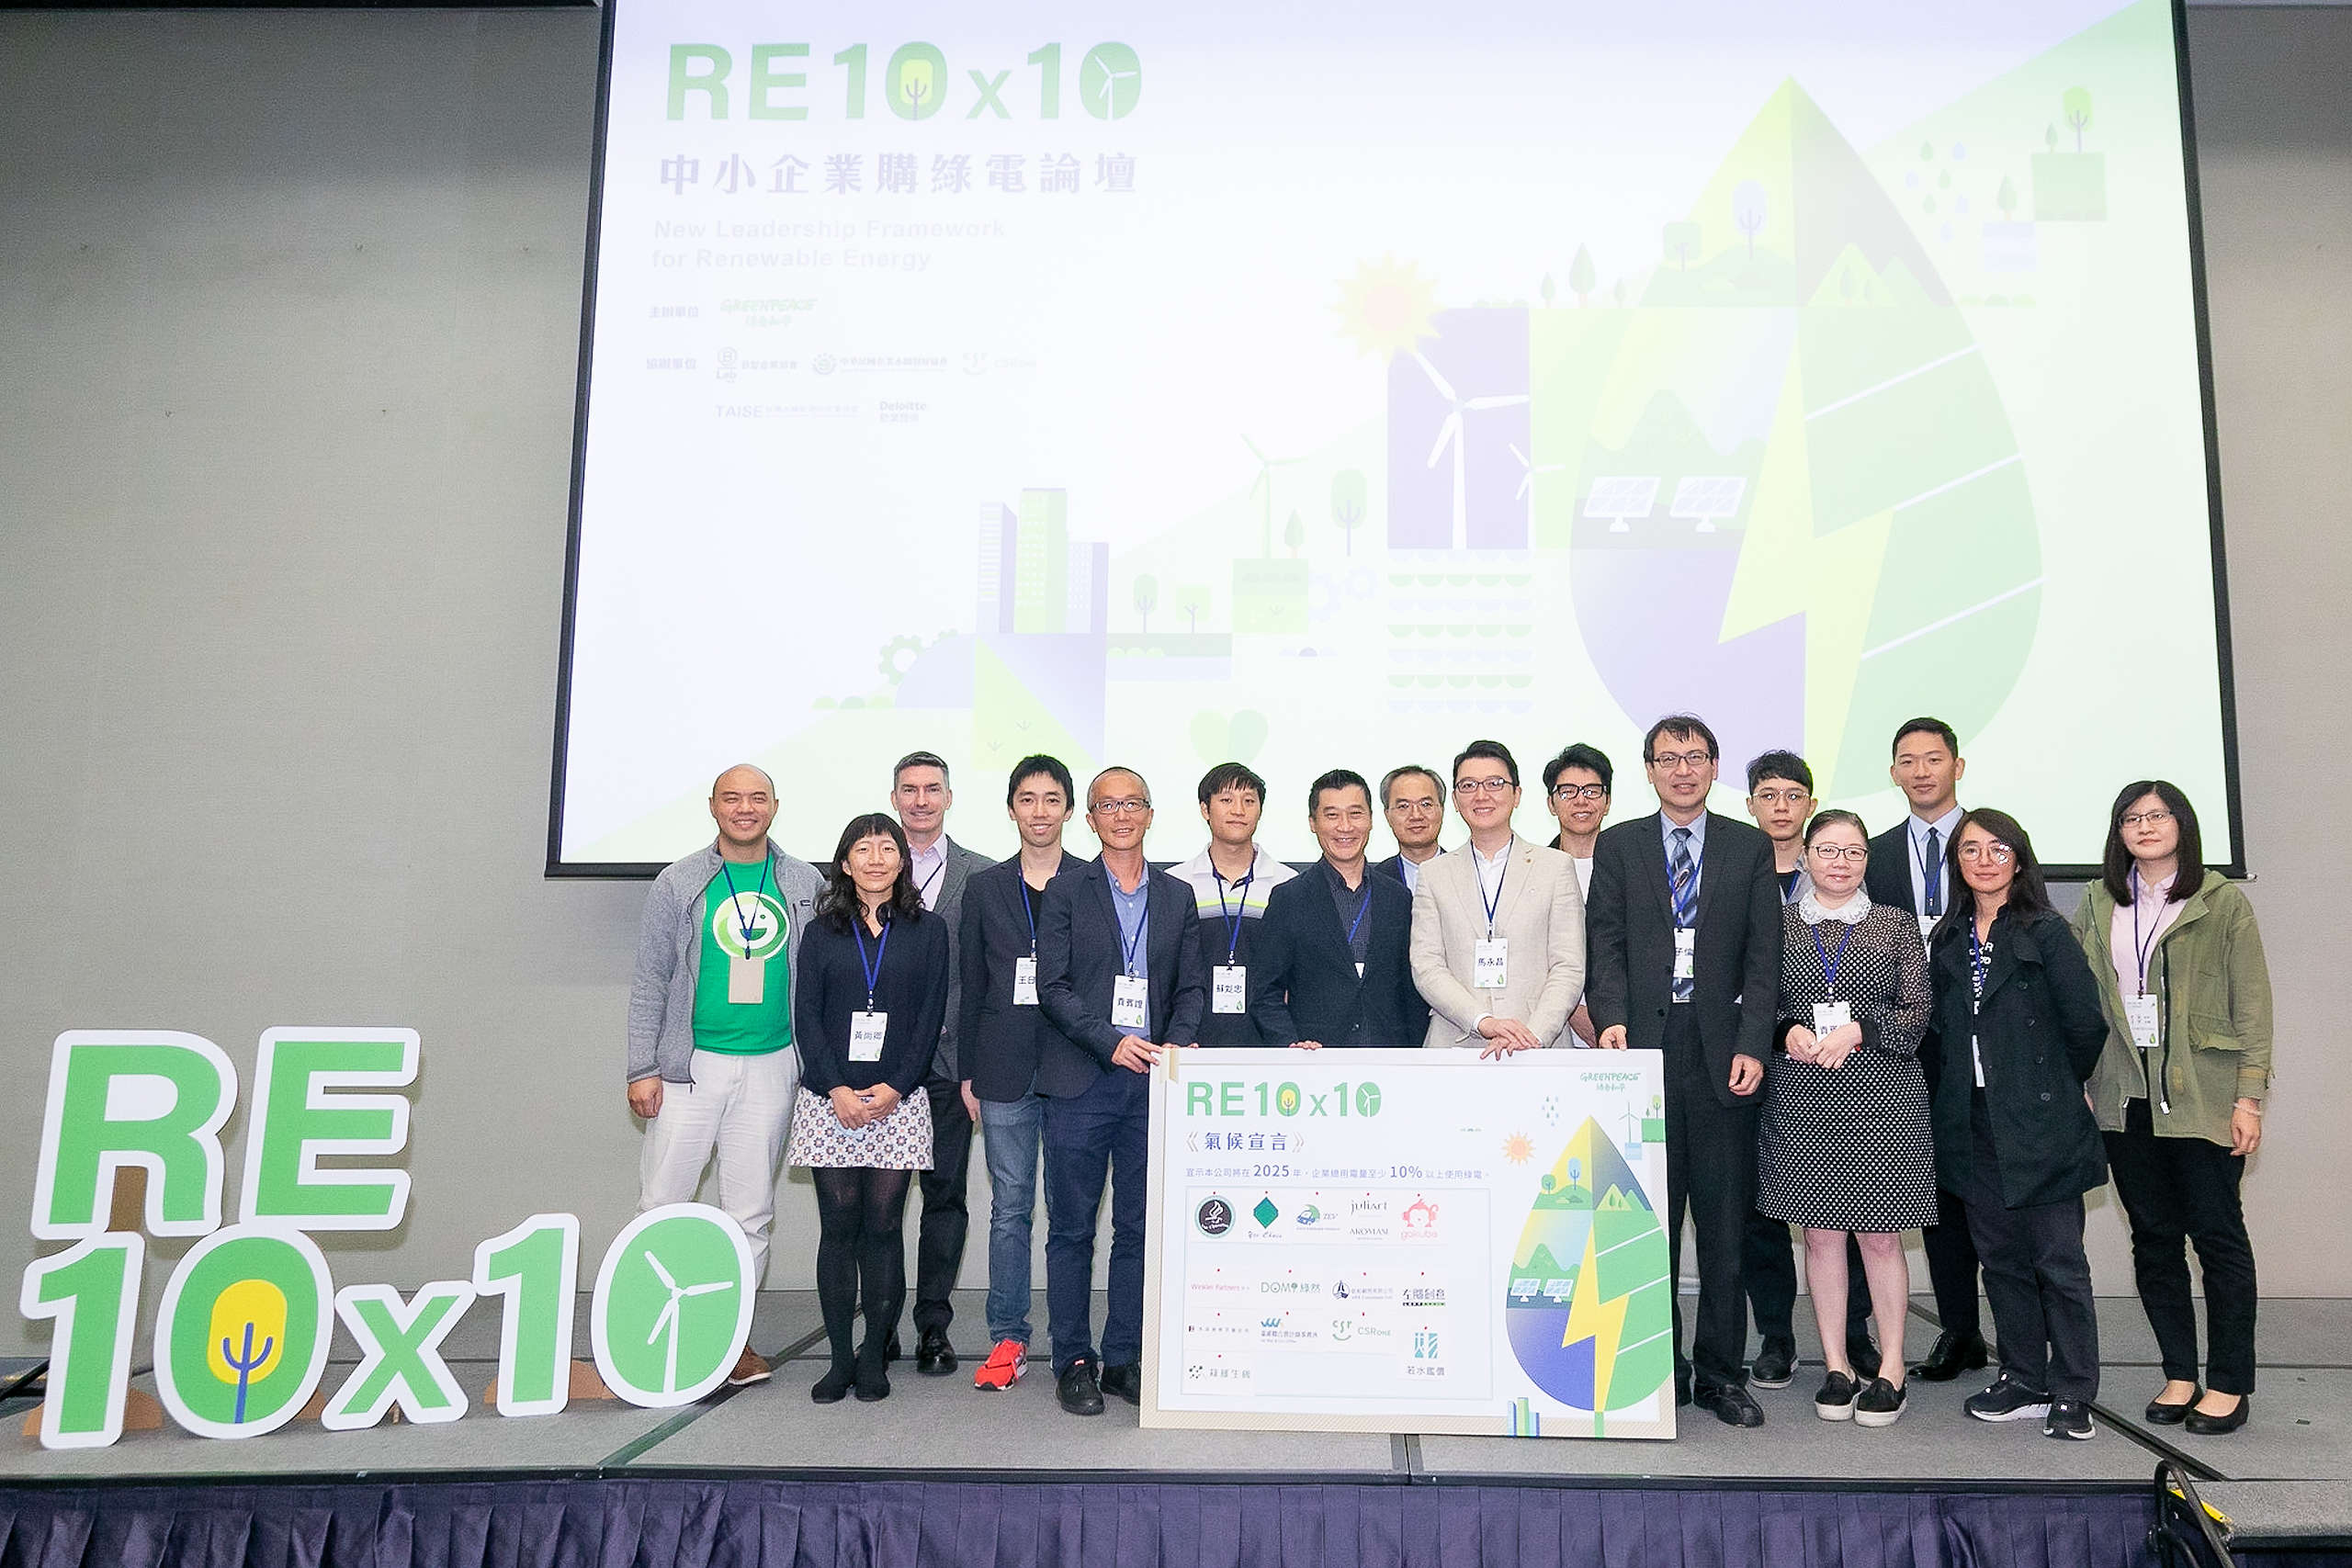 RE10x10 論壇中，有 14 家企業簽署意向書，共同承諾 2025 年前將使用 10% 以上綠電，更有 5 家企業計劃 100% 使用綠電。